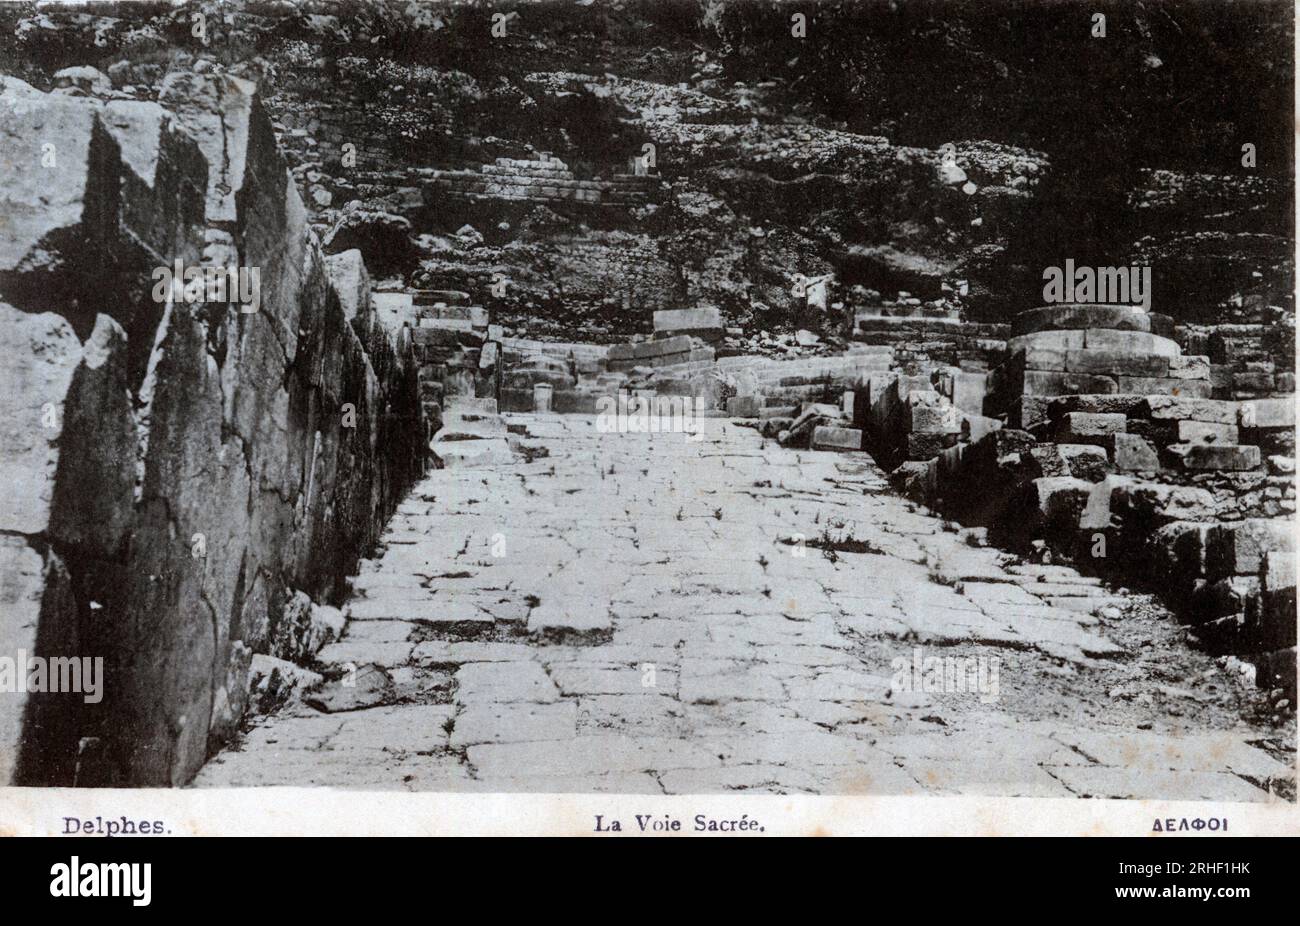 Grece, Delphes : vue de l'une des entrees dite 'voie sacree' - carte postale fin 19eme-20eme siecle Foto Stock